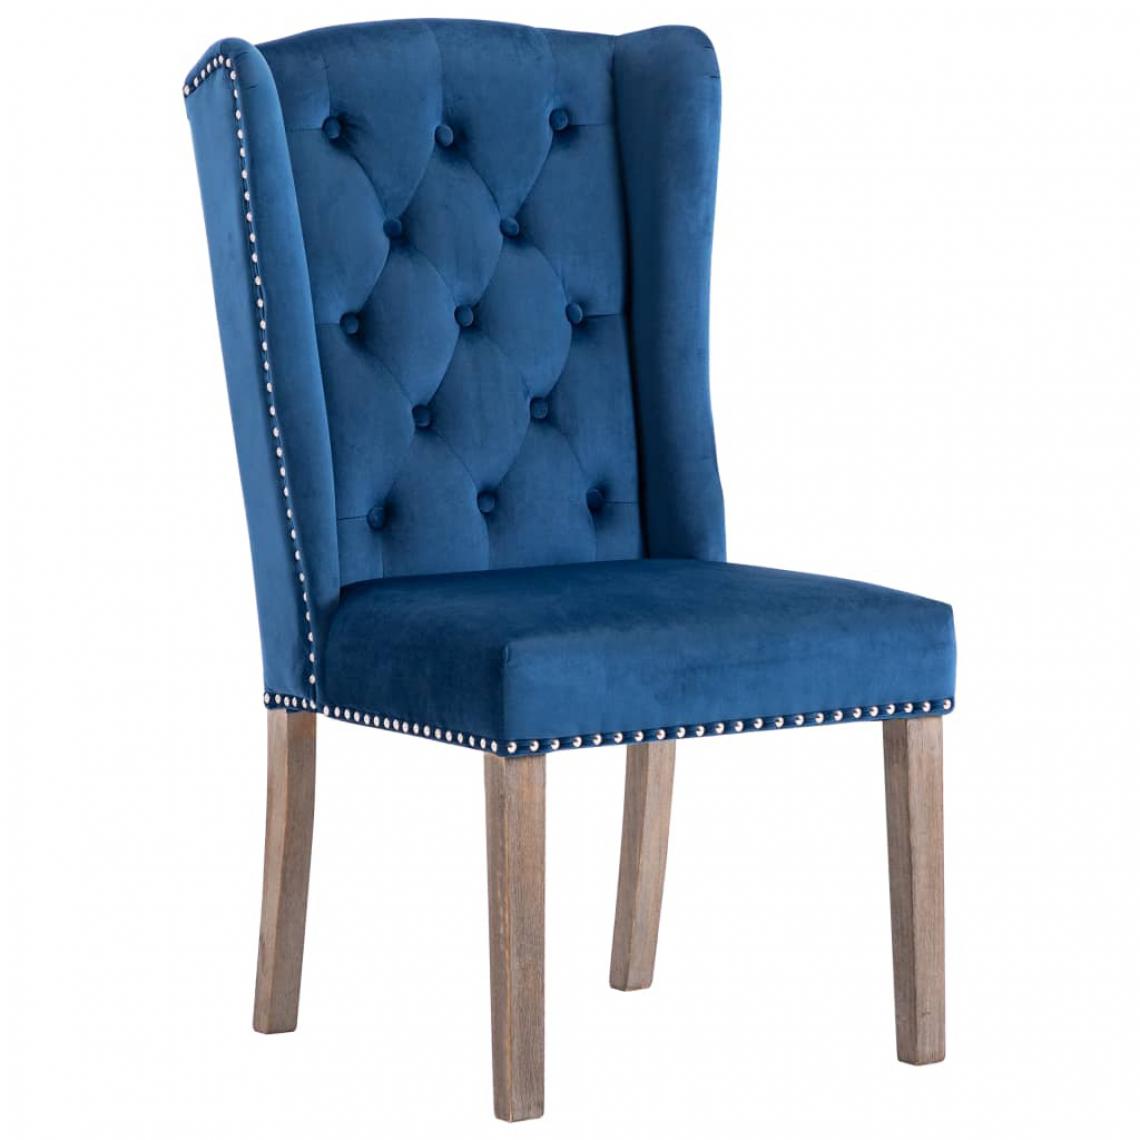 Decoshop26 - Chaise de salle à manger bouton décoratif sur le dossier pieds en bois velours bleu CDS020016 - Chaises